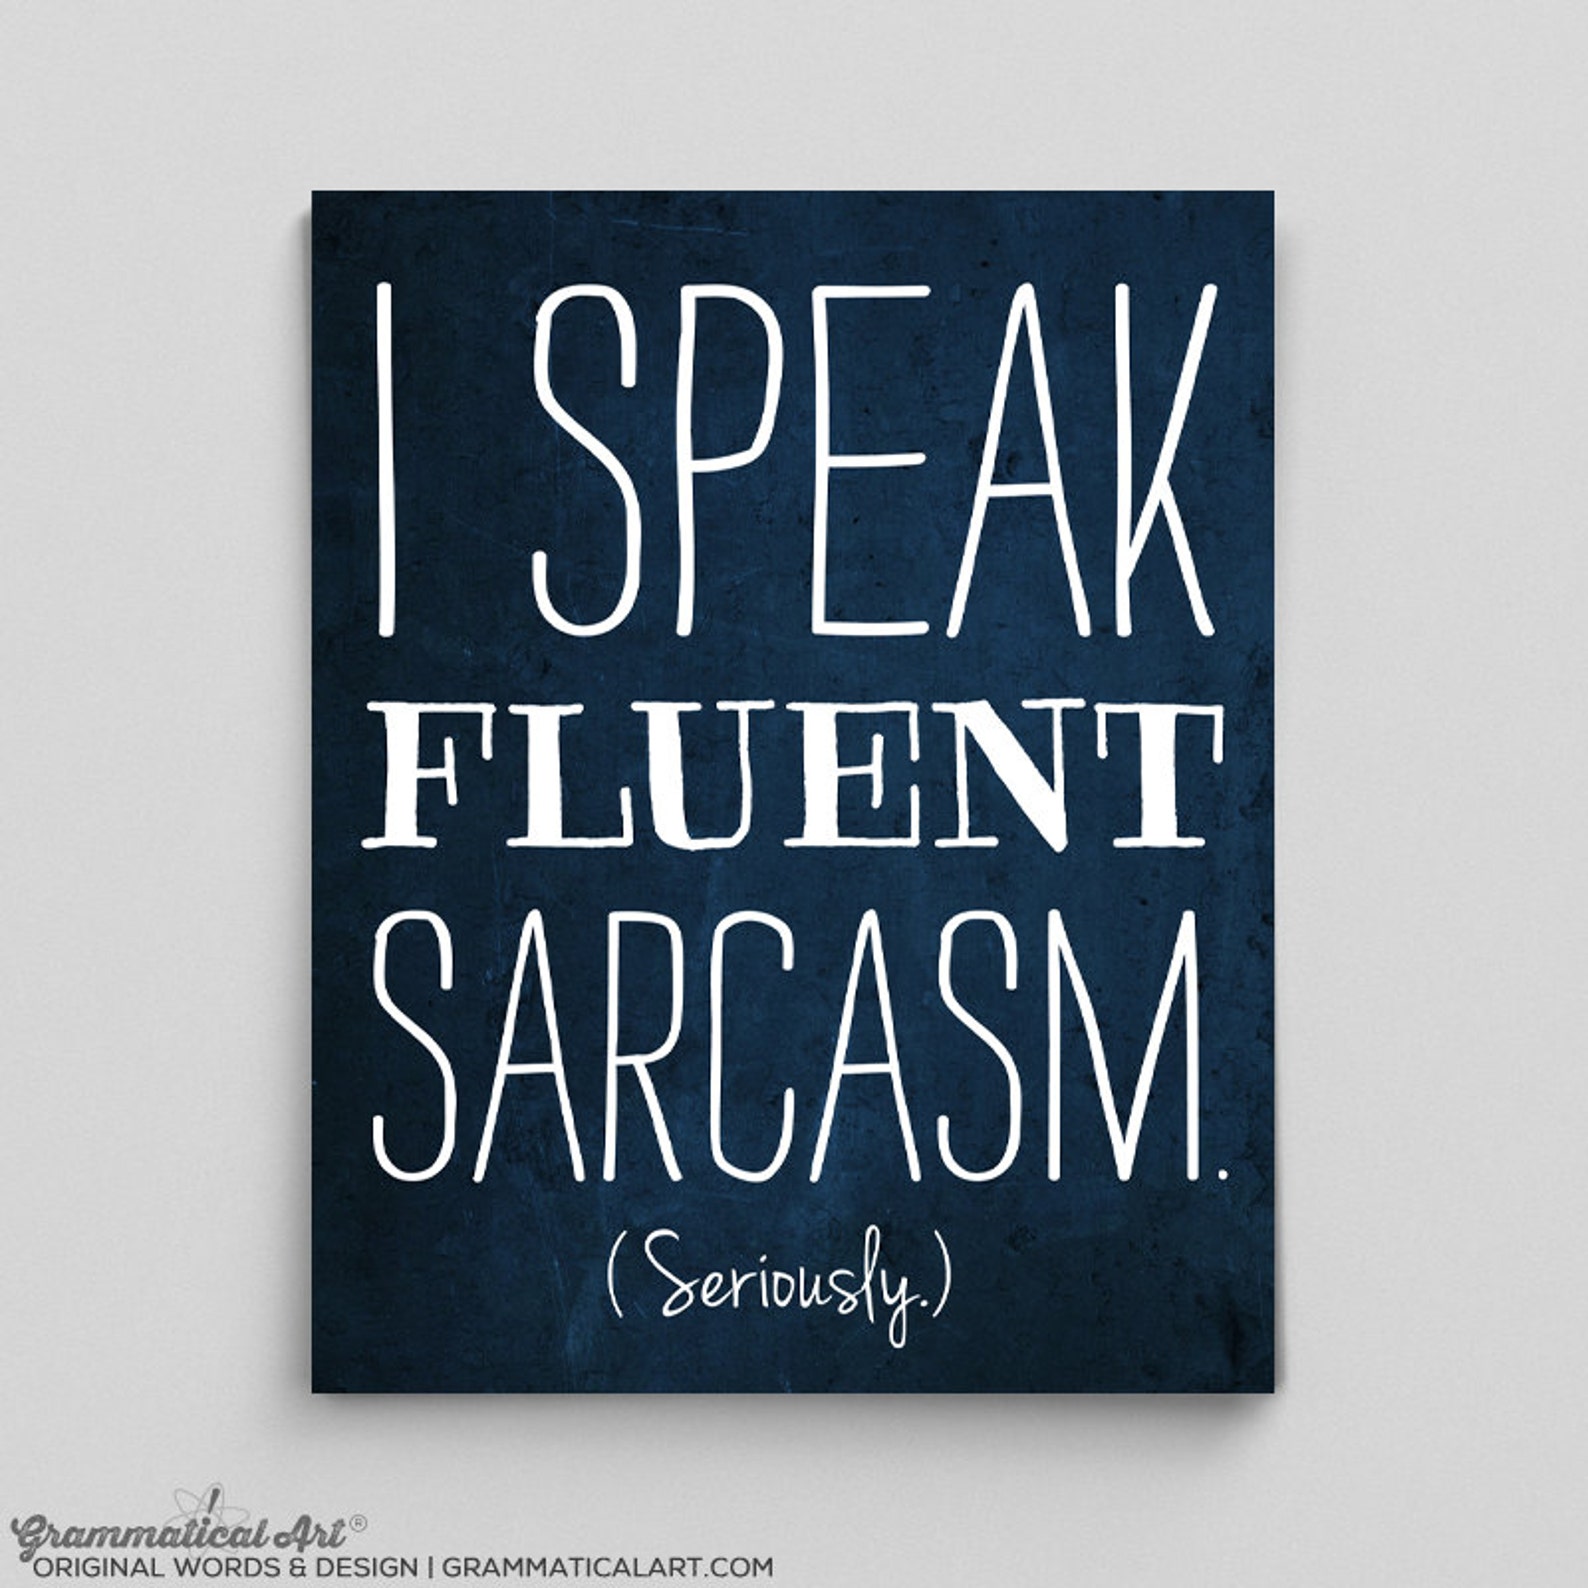 Speak fluent. Книга про английский сарказм. I speak fluently. Speak fluent sarcasm перевод на русский.